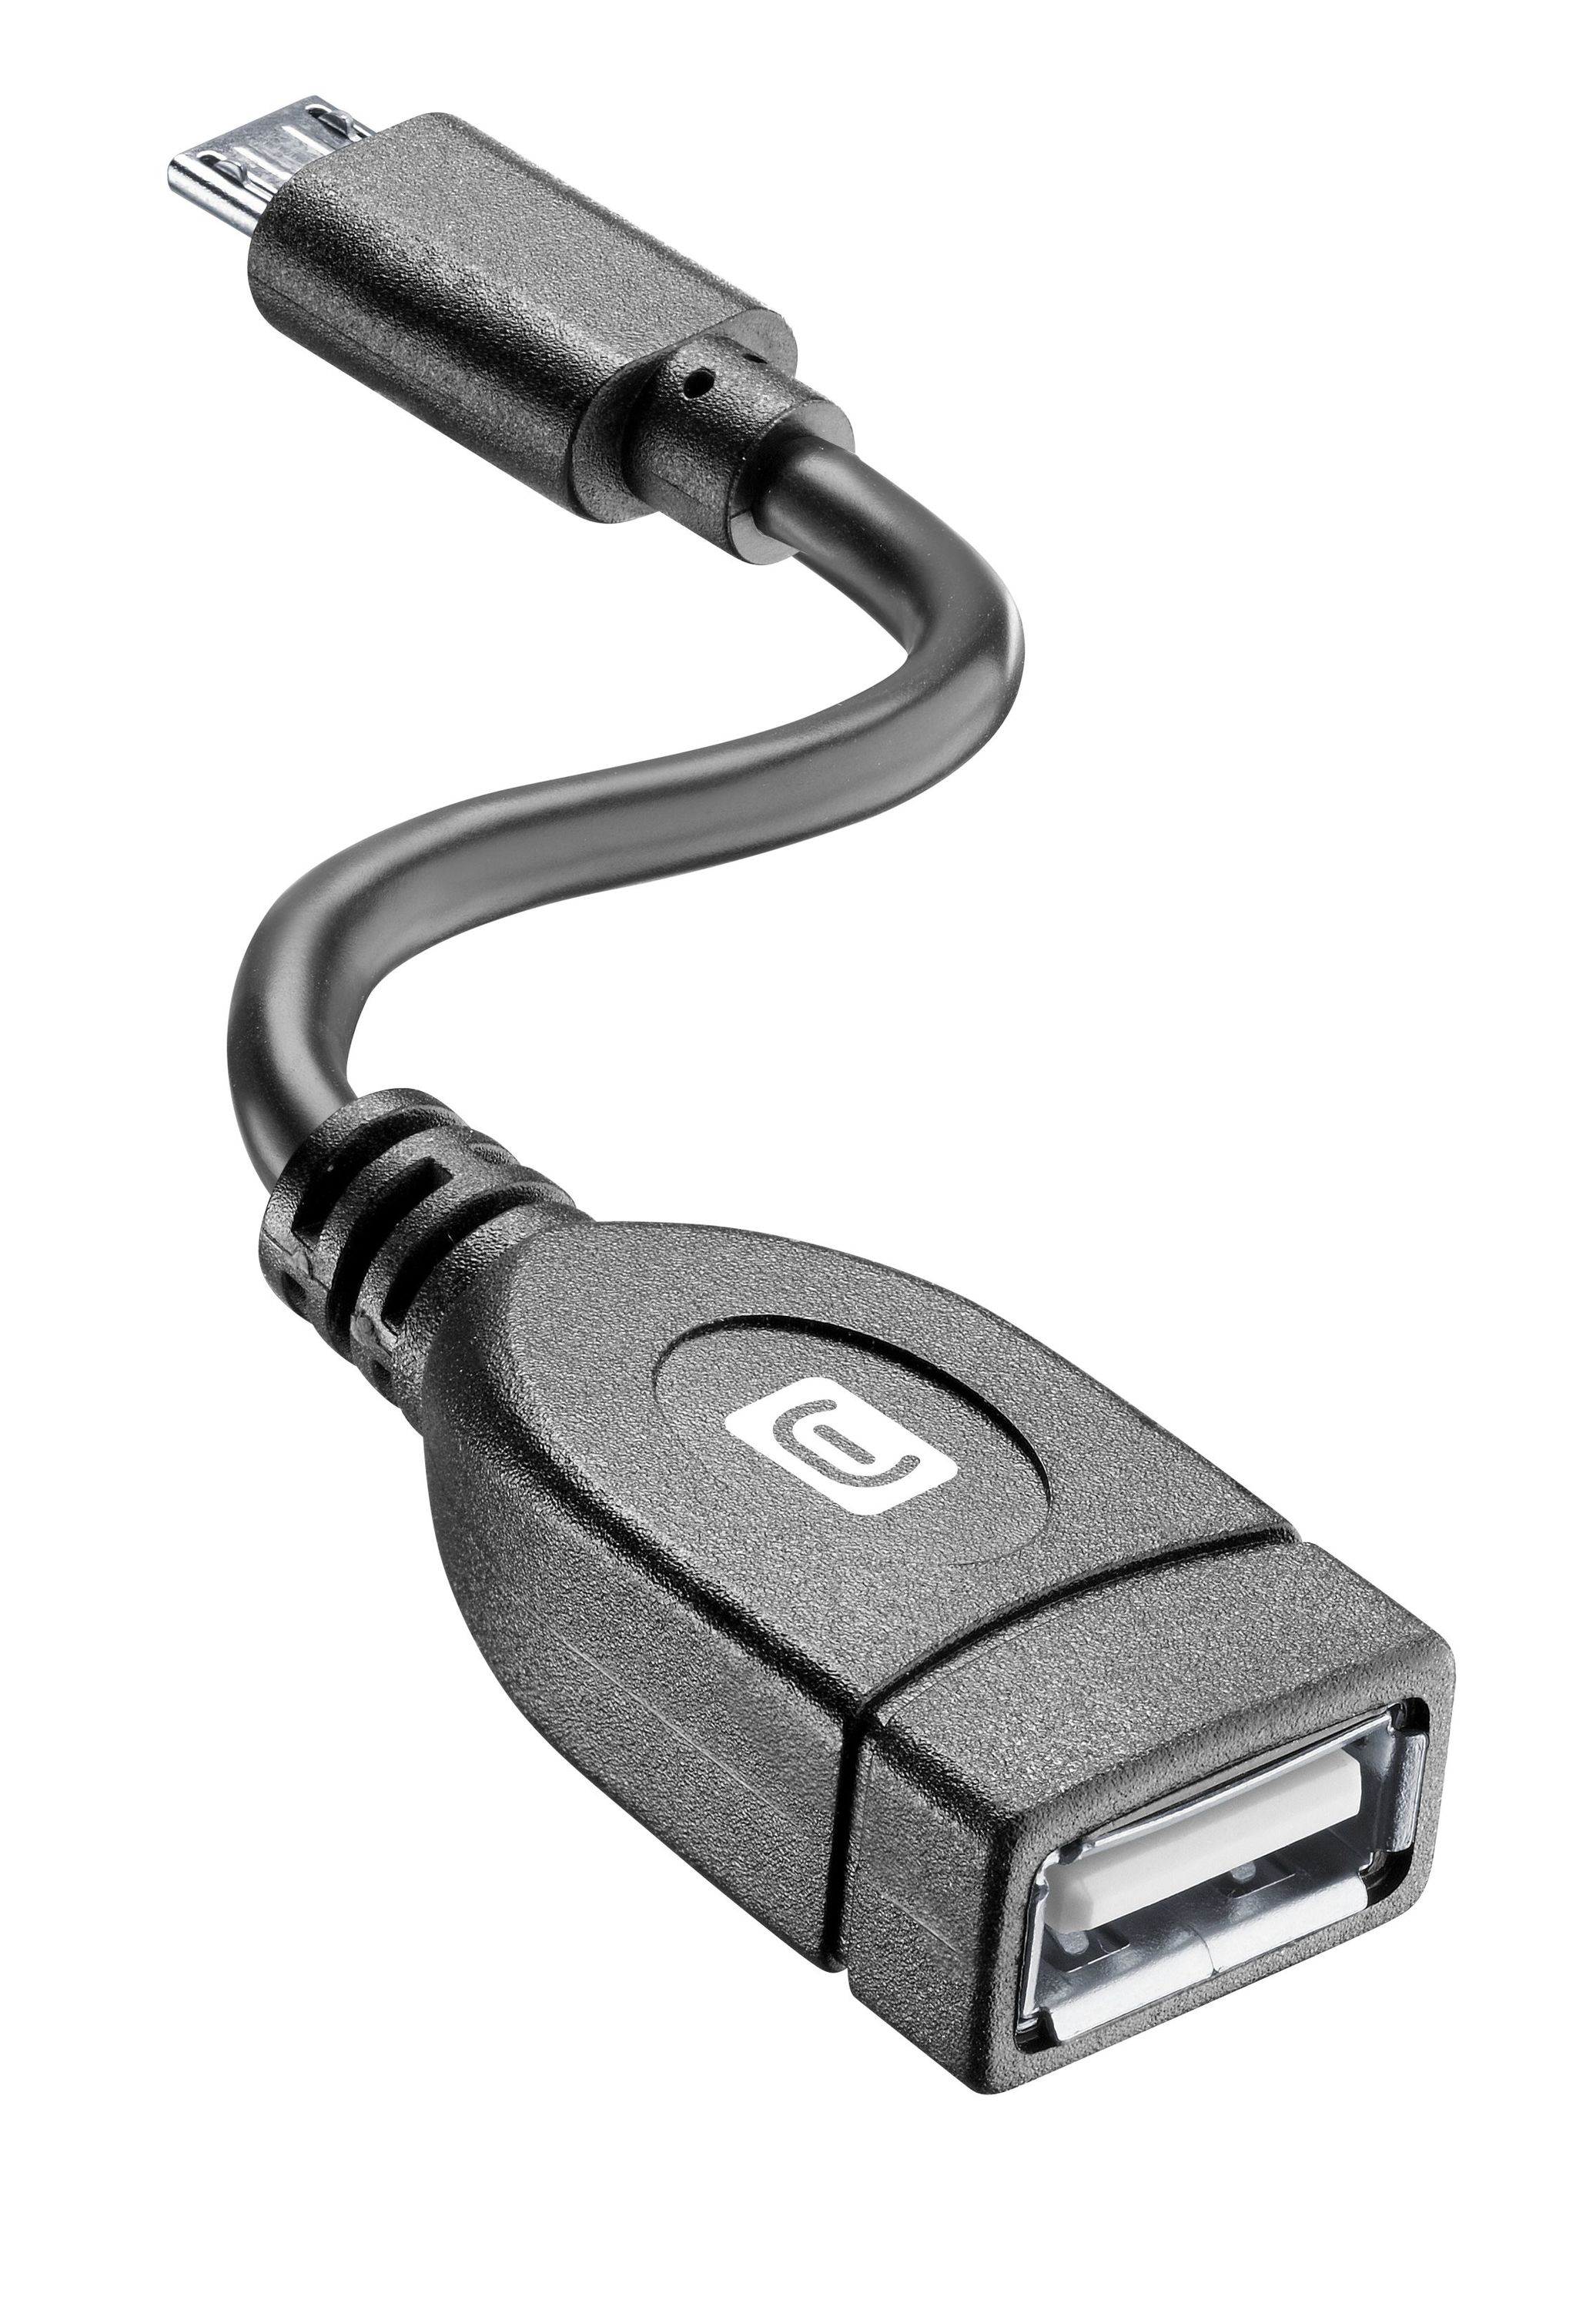 Adaptador On The Go de MICRO-USB a USB, Adaptadores y Accesorios, Ricarica e Utilità